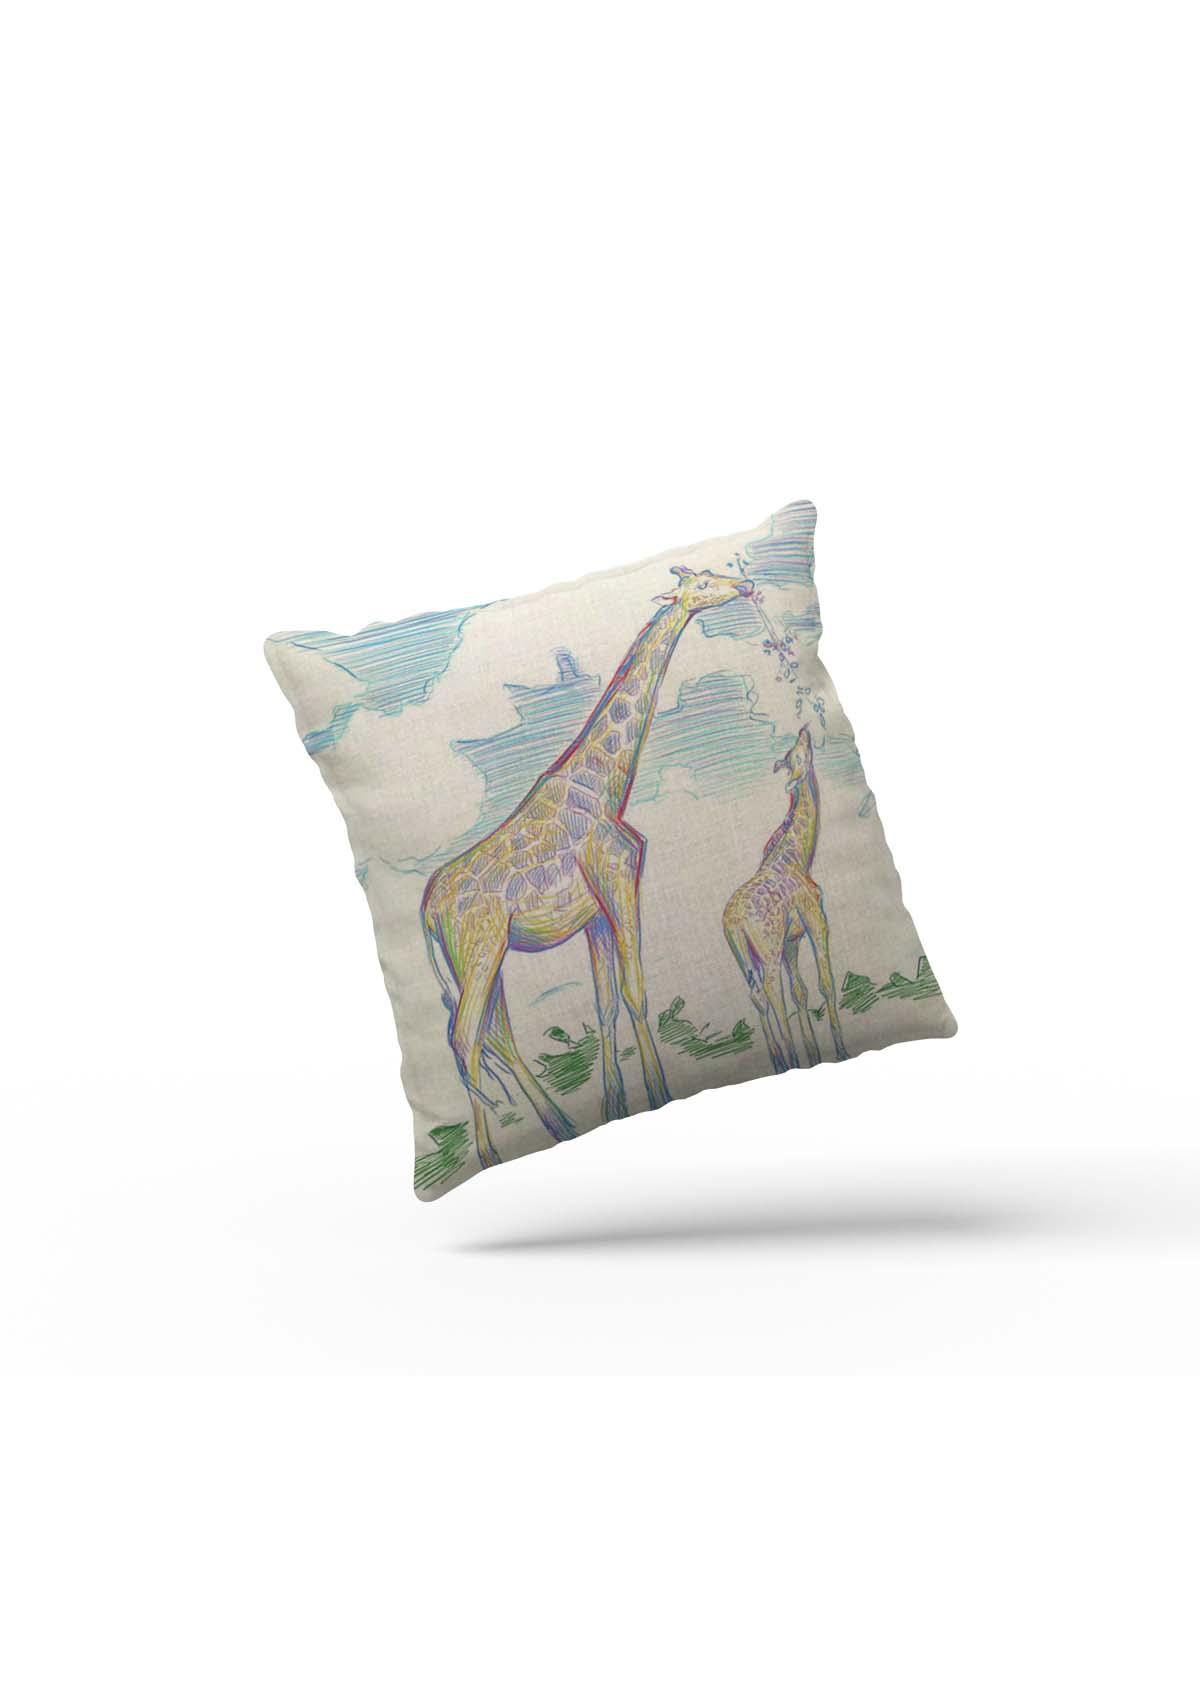 giraffe in clouds cushion cover